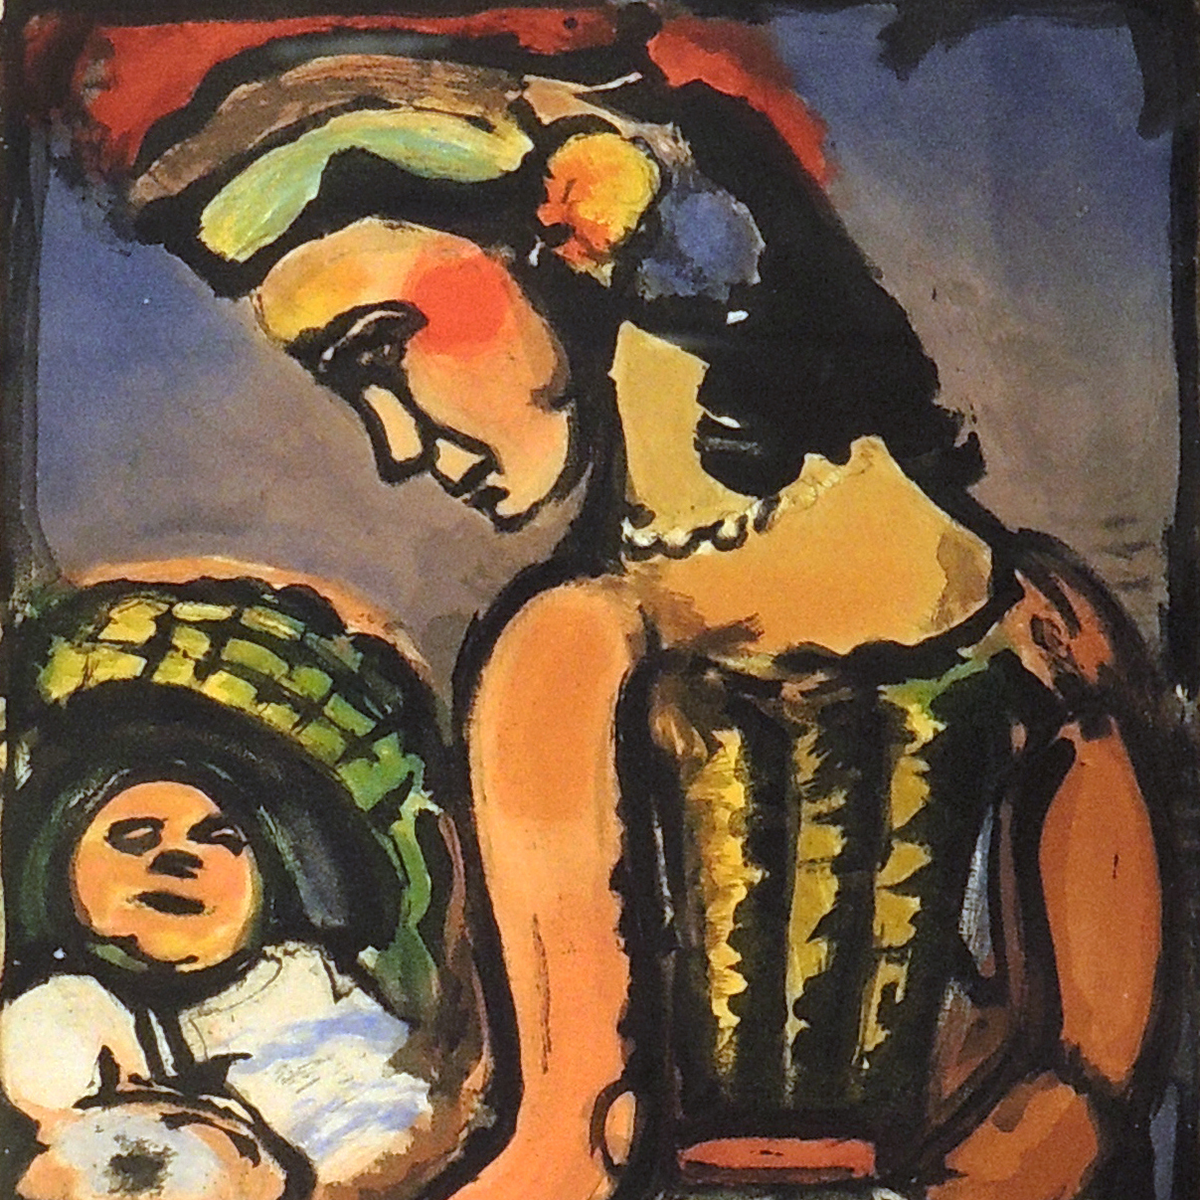 特価爆買いジョルジュ・ルオー「伏目の娼婦」（悪の華）1937年 銅版画、エッチング